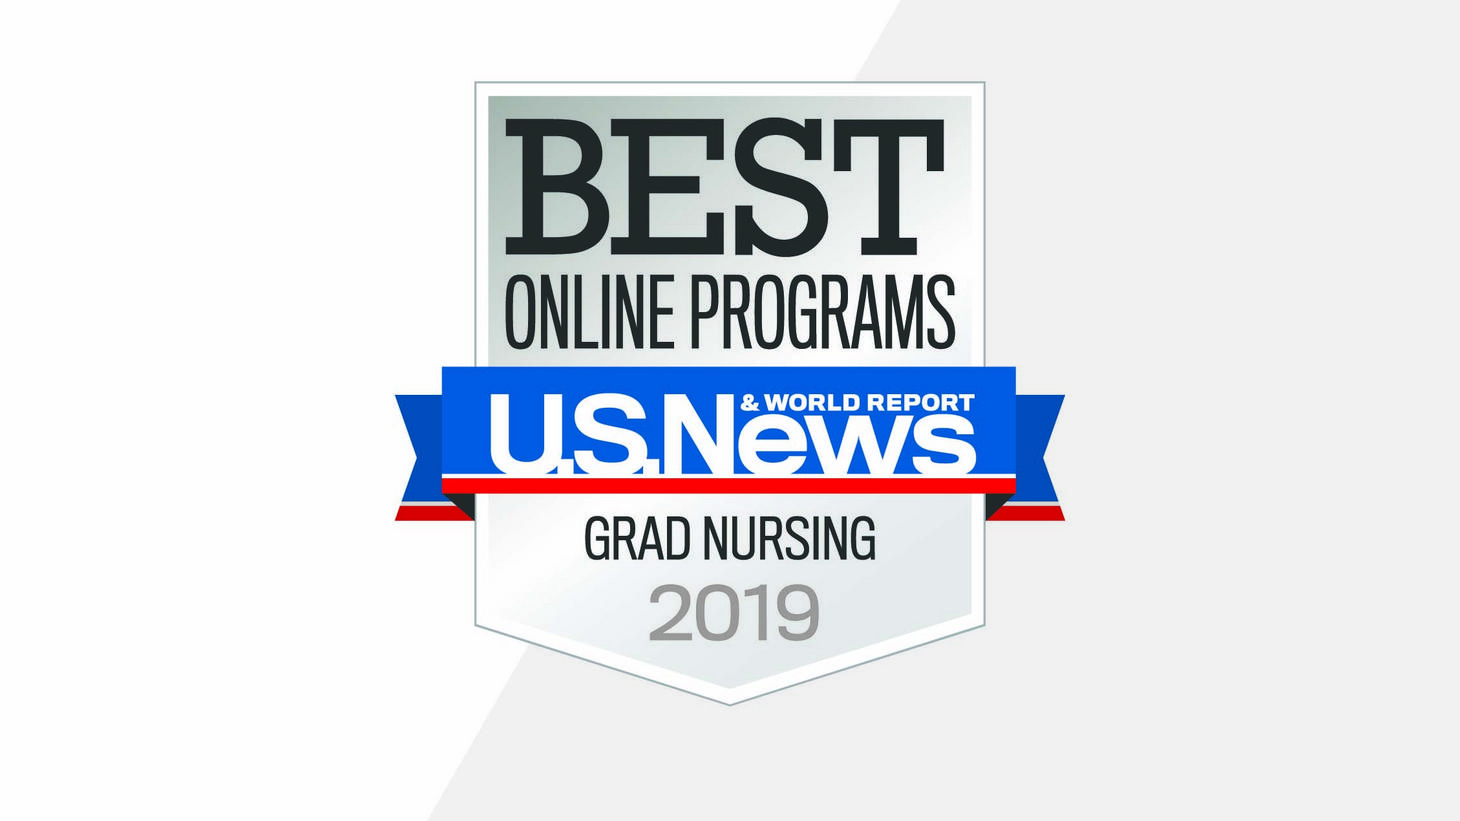 Best Online Programs Grad Nursing 2019